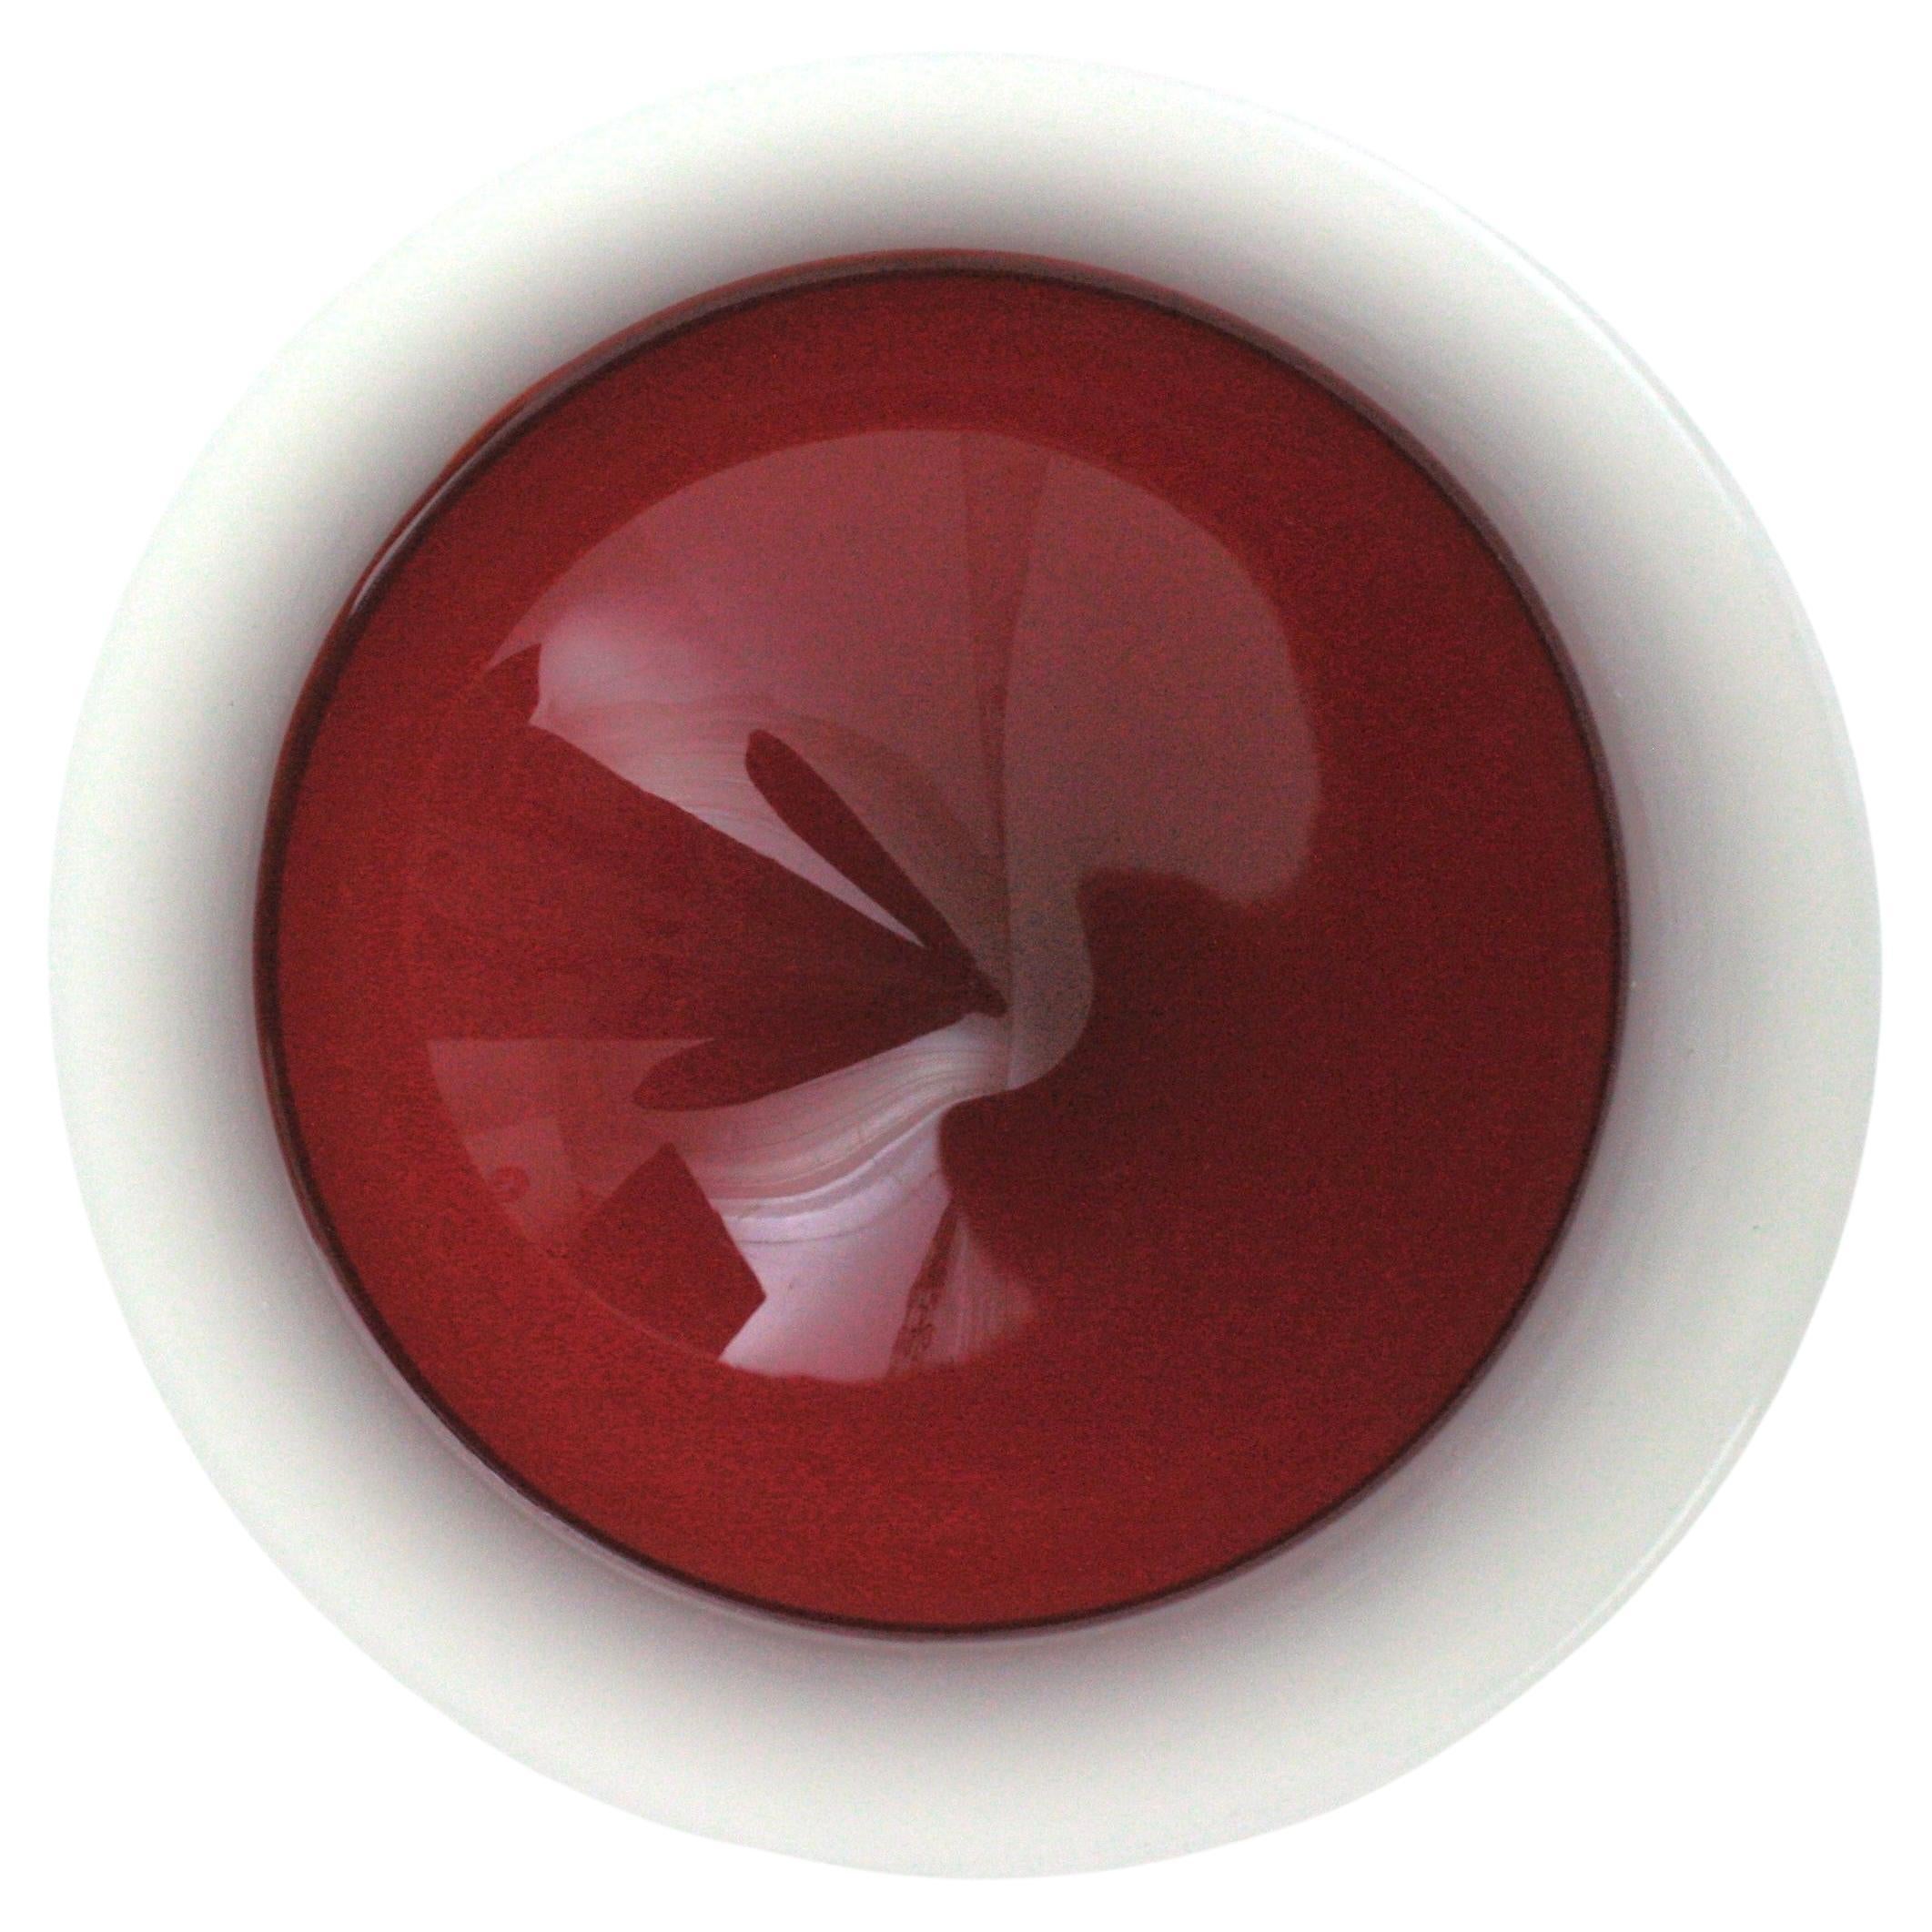 Joli bol en verre soufflé à la bouche de Murano, rouge et blanc, en forme de géode ronde. Archimede Seguso, Italie, années 1950.
Verre blanc albâtre avec  verre rouge dans la partie centrale et technique Sommerso.
Couleurs vives.
Parfait comme idée